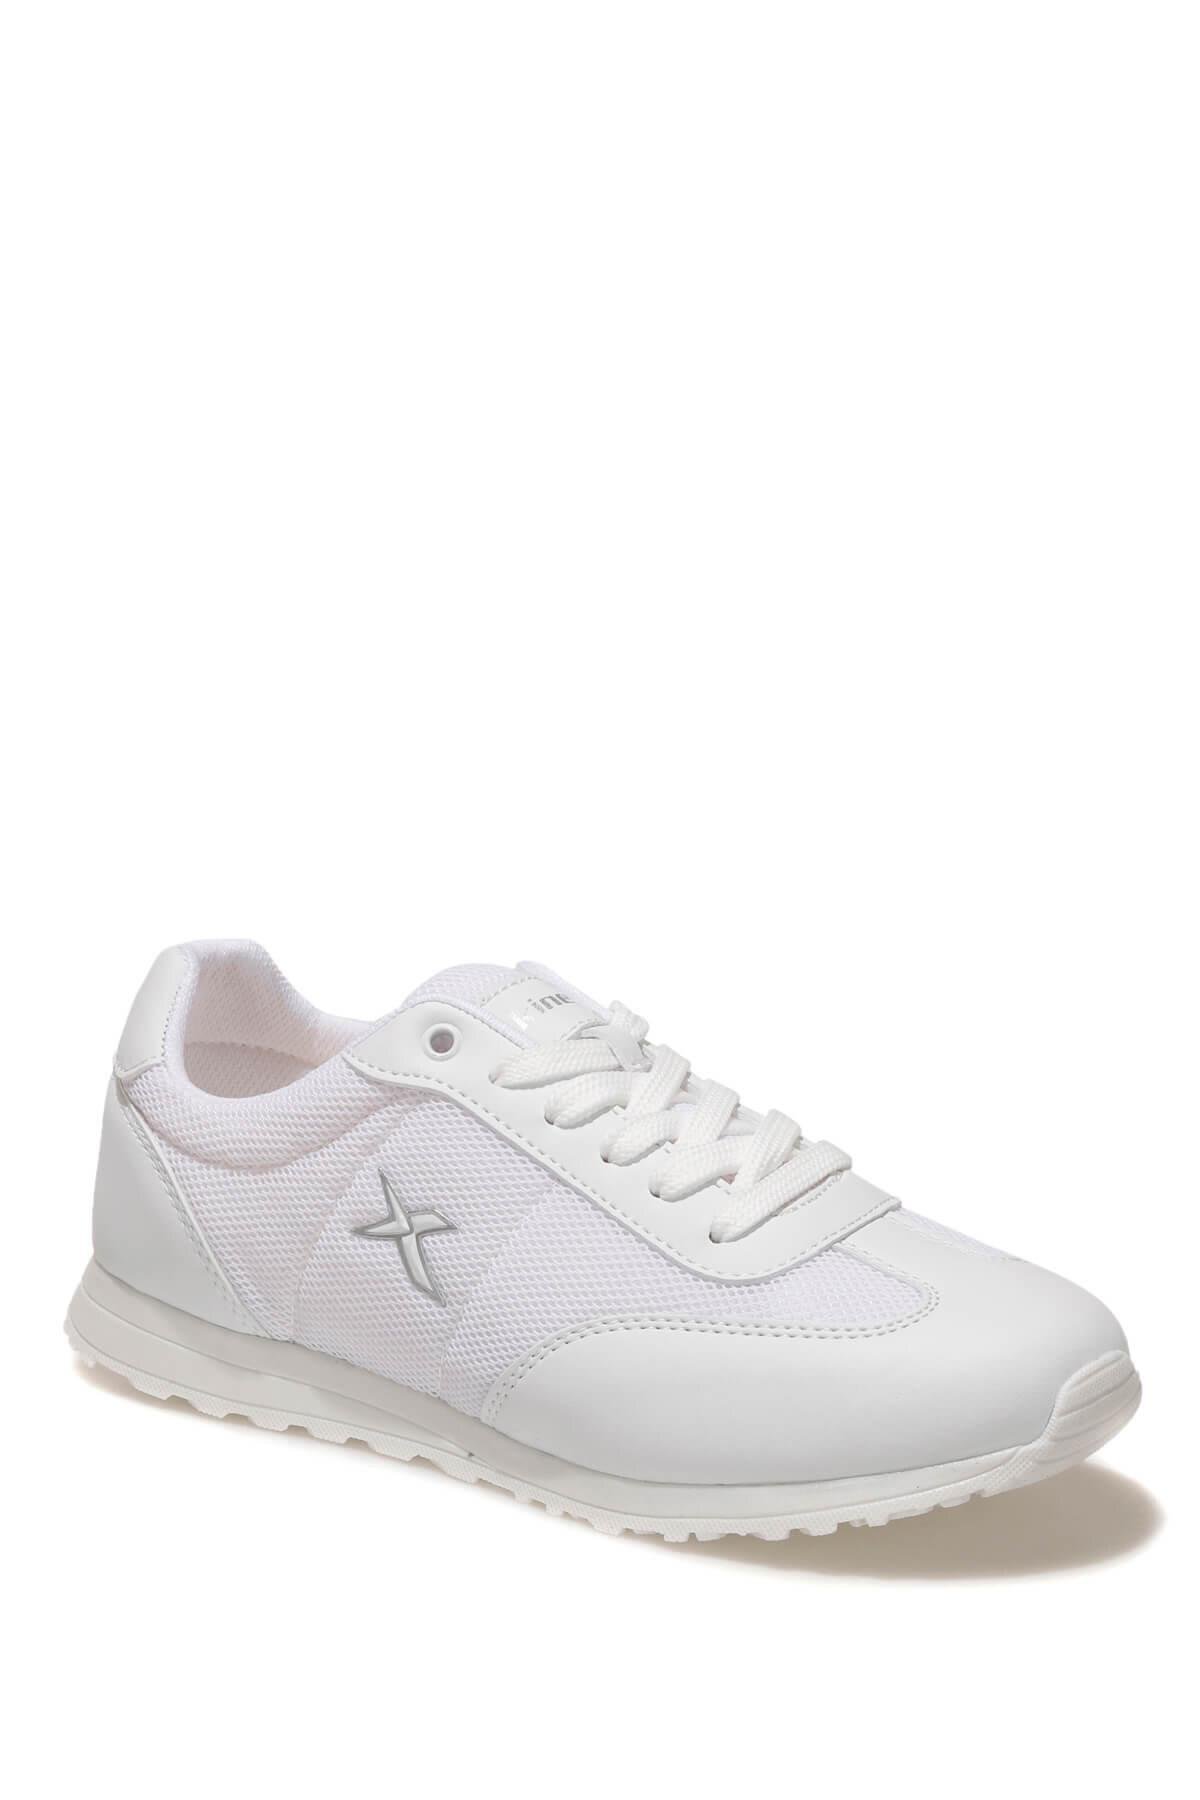 Kinetix Ventus Beyaz Renk Bayan Spor Ayakkabı